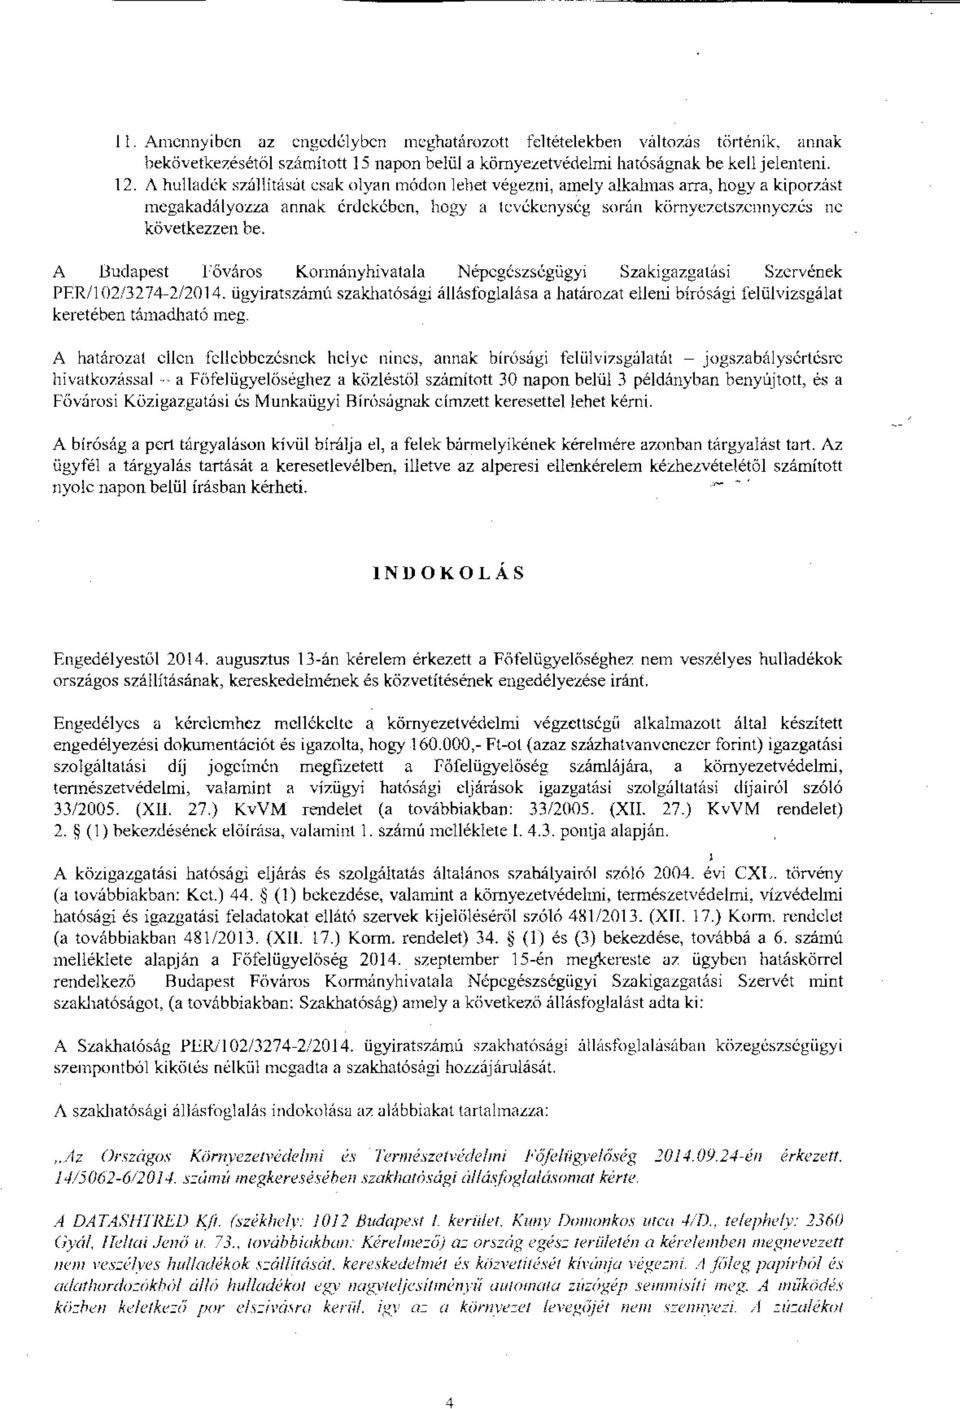 A Budapest főváros Kormányhivatala Népegészsl:gügy1 Szakigazgatási Szervének PFR/102/3274-2/2014. ügyiratszámu szakhatósági állásfoglalása a határo.